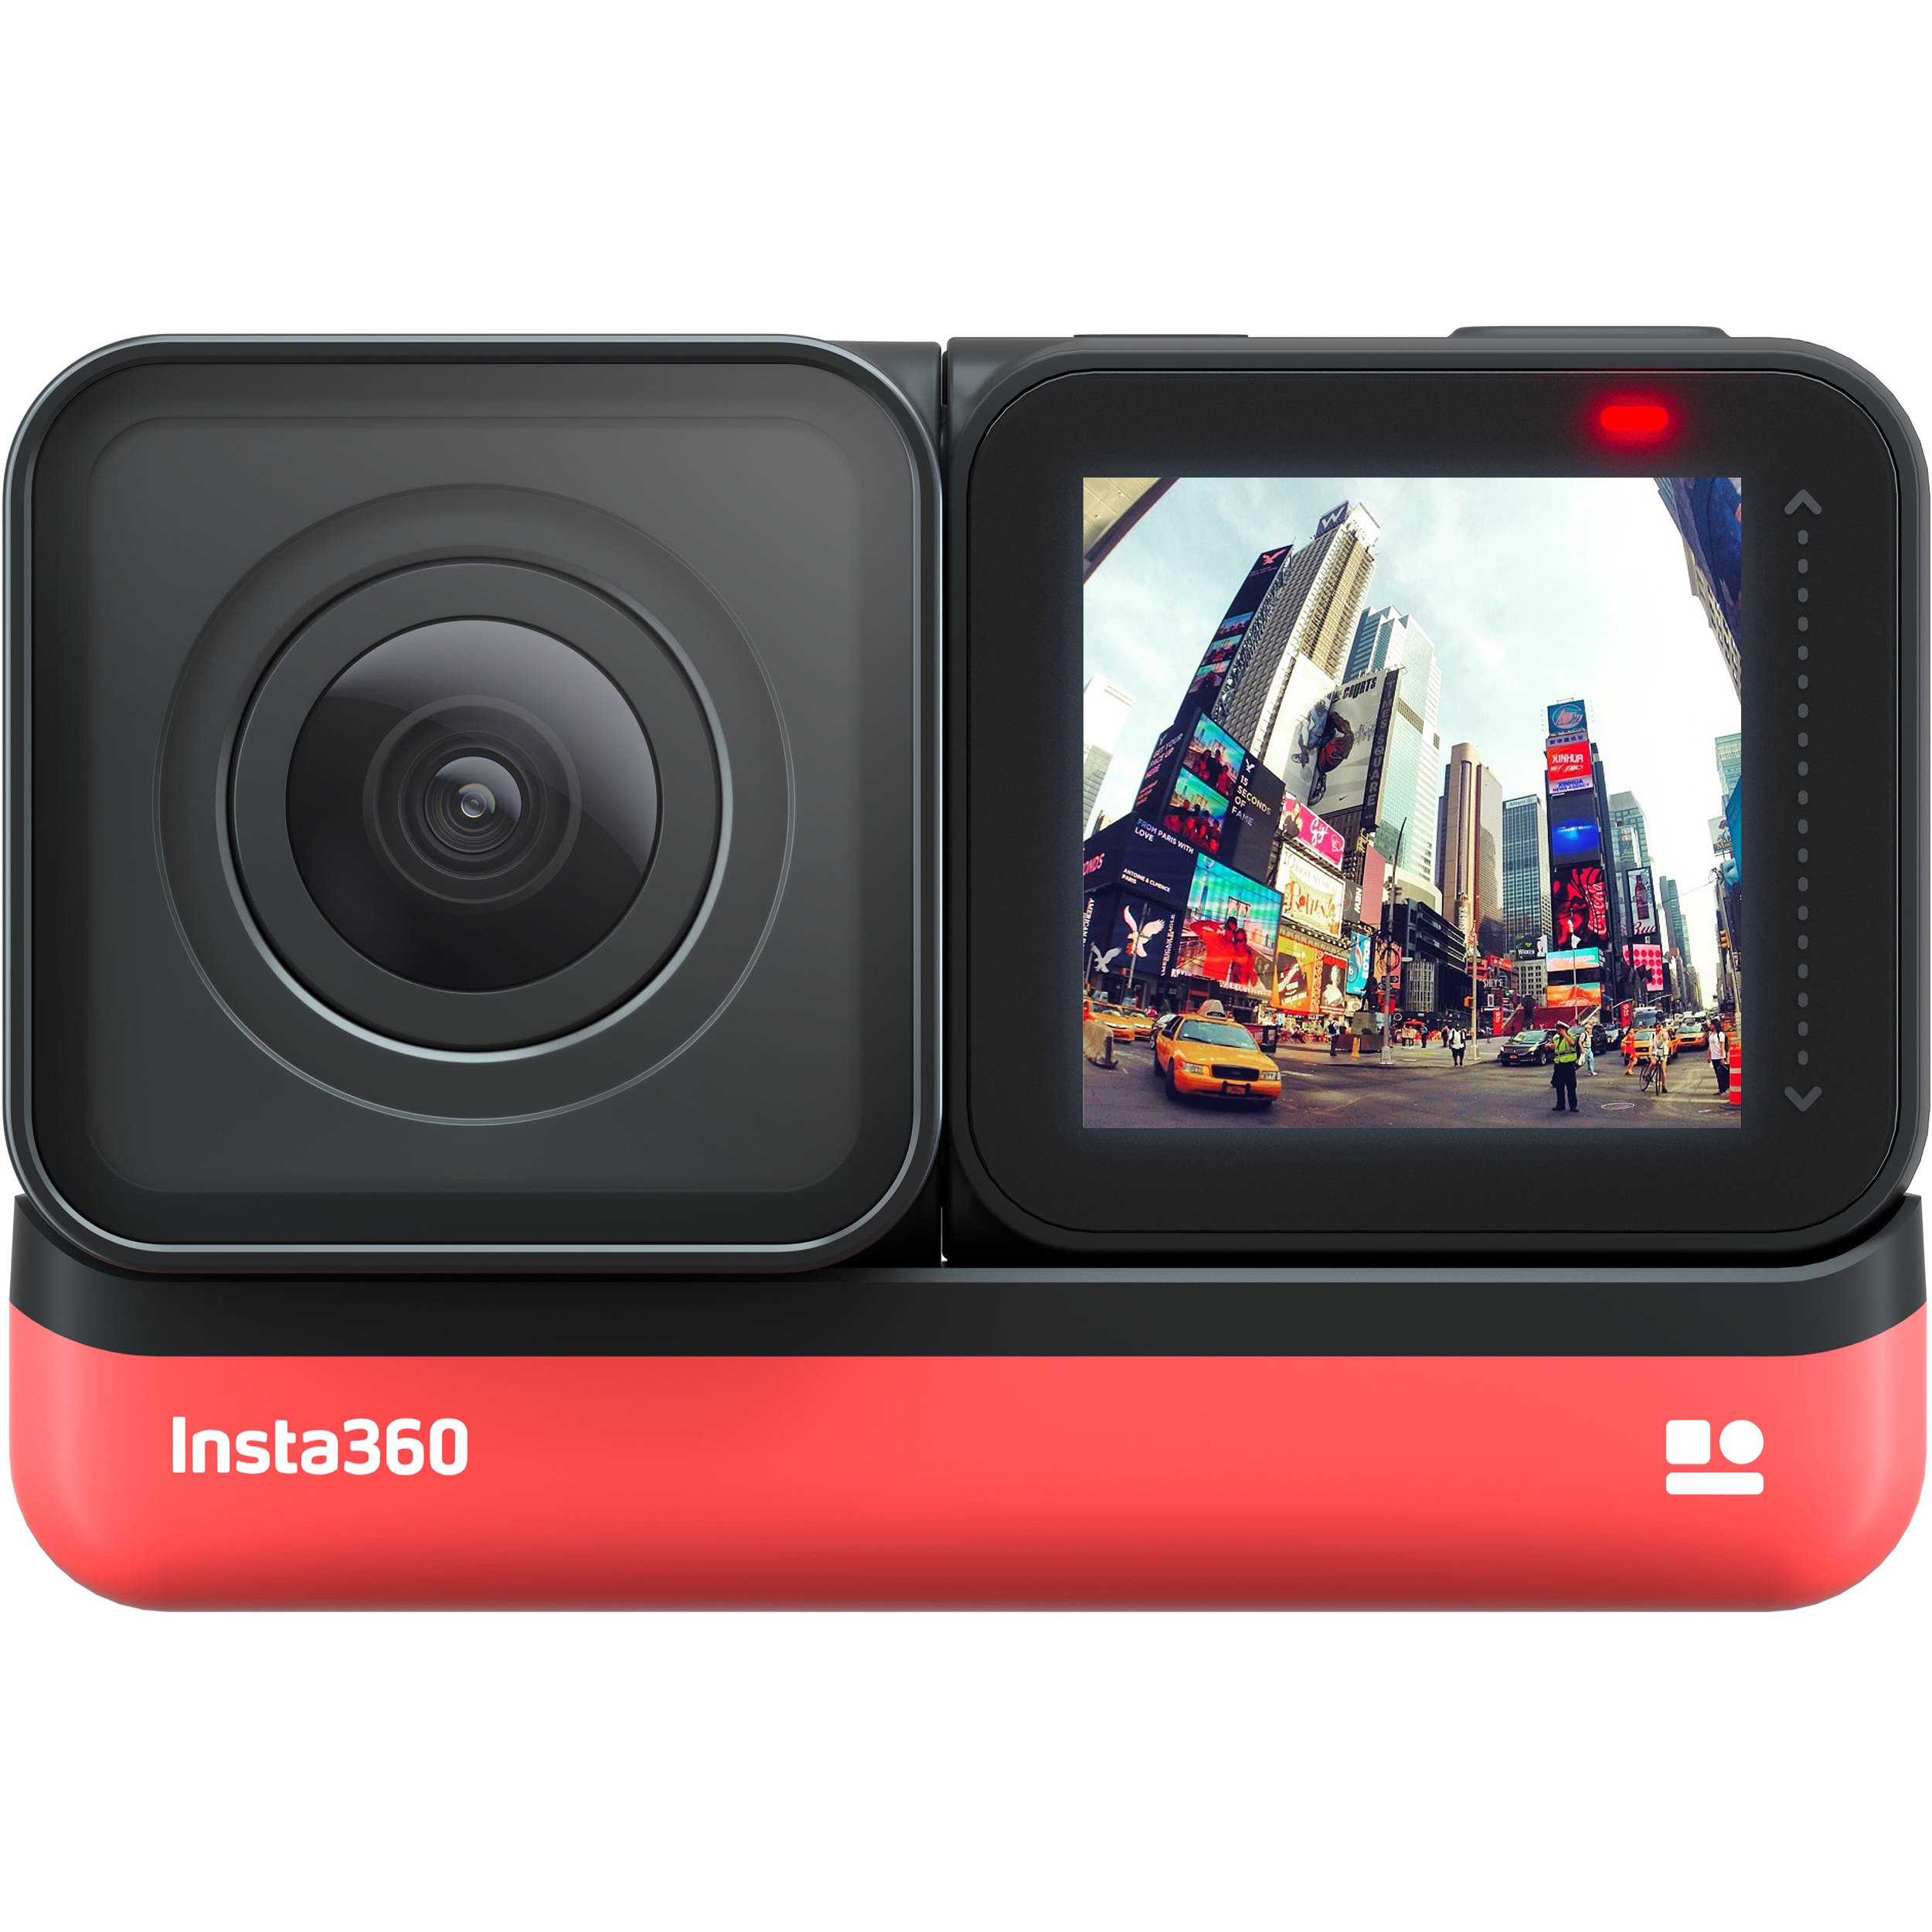 دوربین فیلم برداری ورزشی اینستا 360 مدل ONE R Twin Edition به همراه لوازم جانبی پلوز